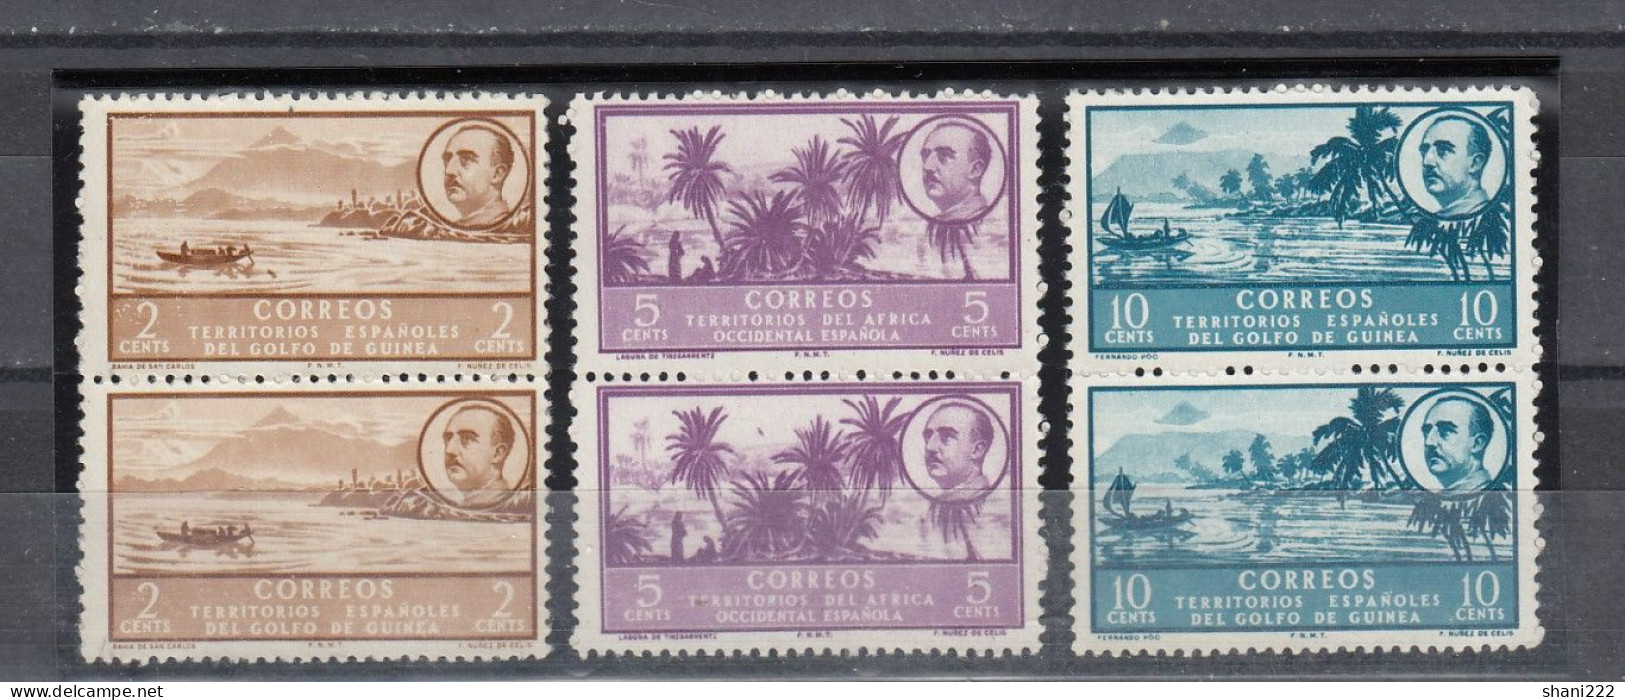 Spanish Guinea - 1951 Franco Issue - 3 Pairs, No Gum (2-144) - Guinea Española